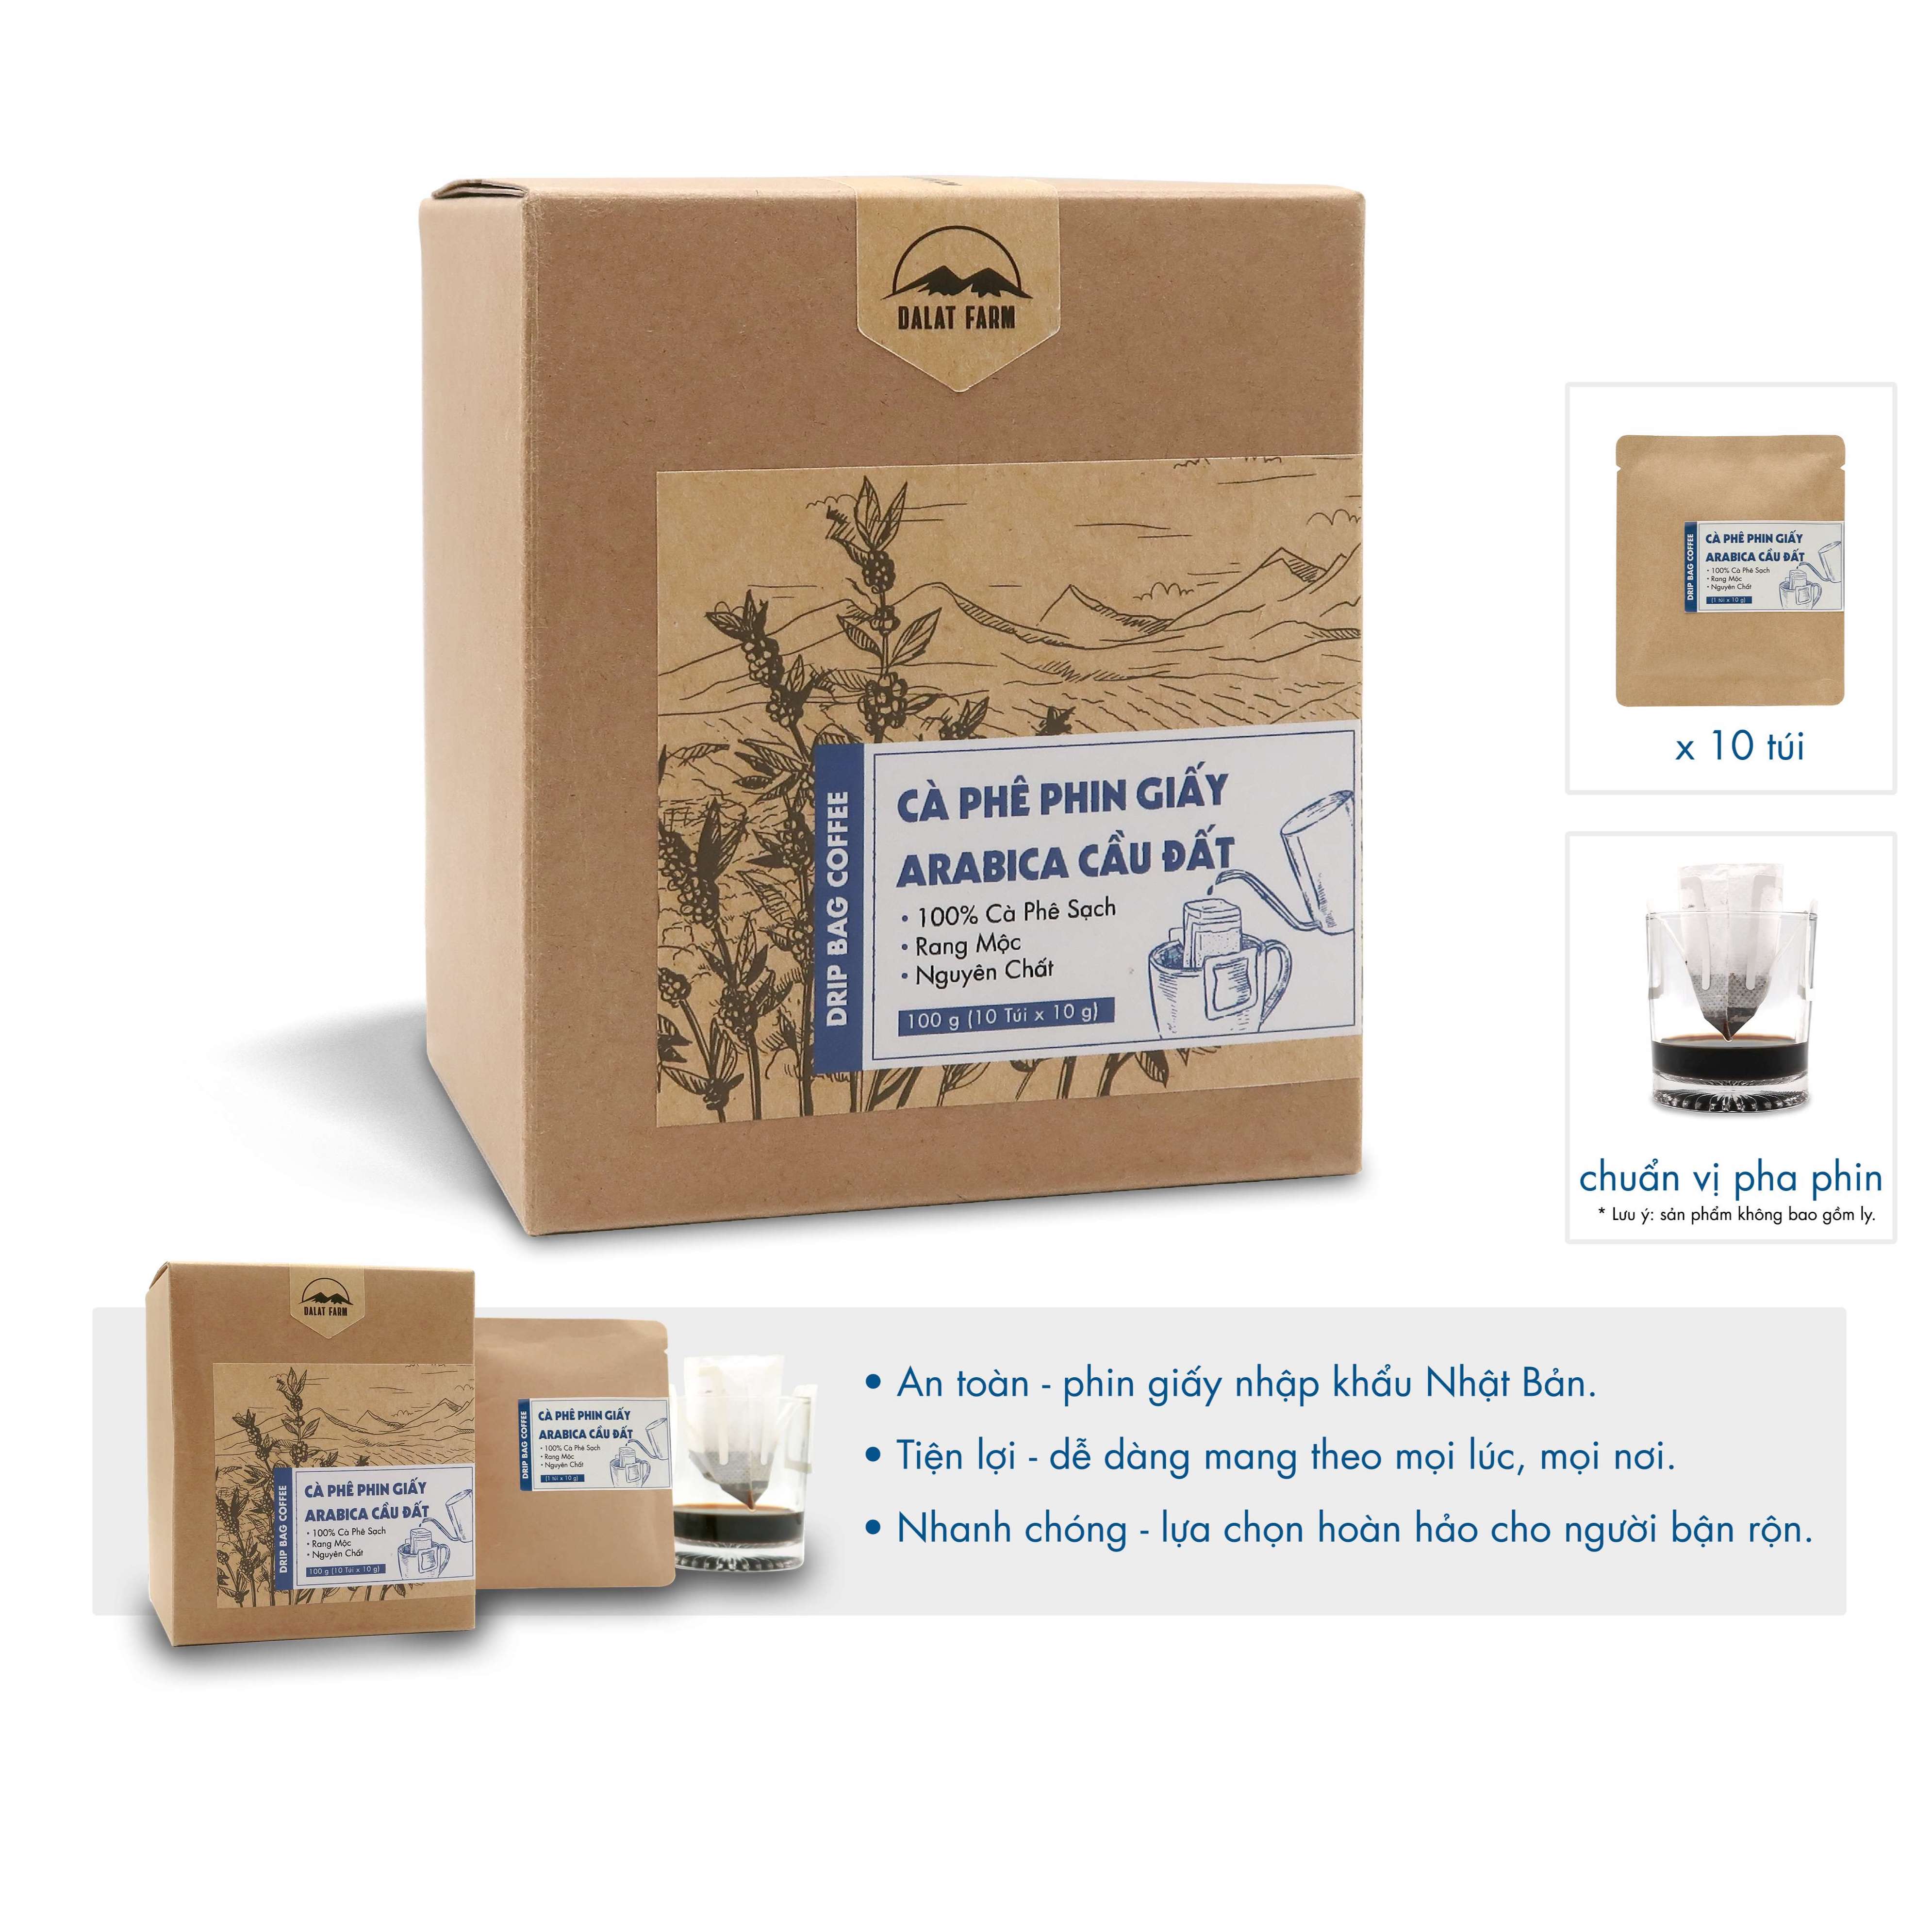 Cà phê phin giấy Arabica Cầu Đất DalatFarm - Hộp 10 túi x 10 g